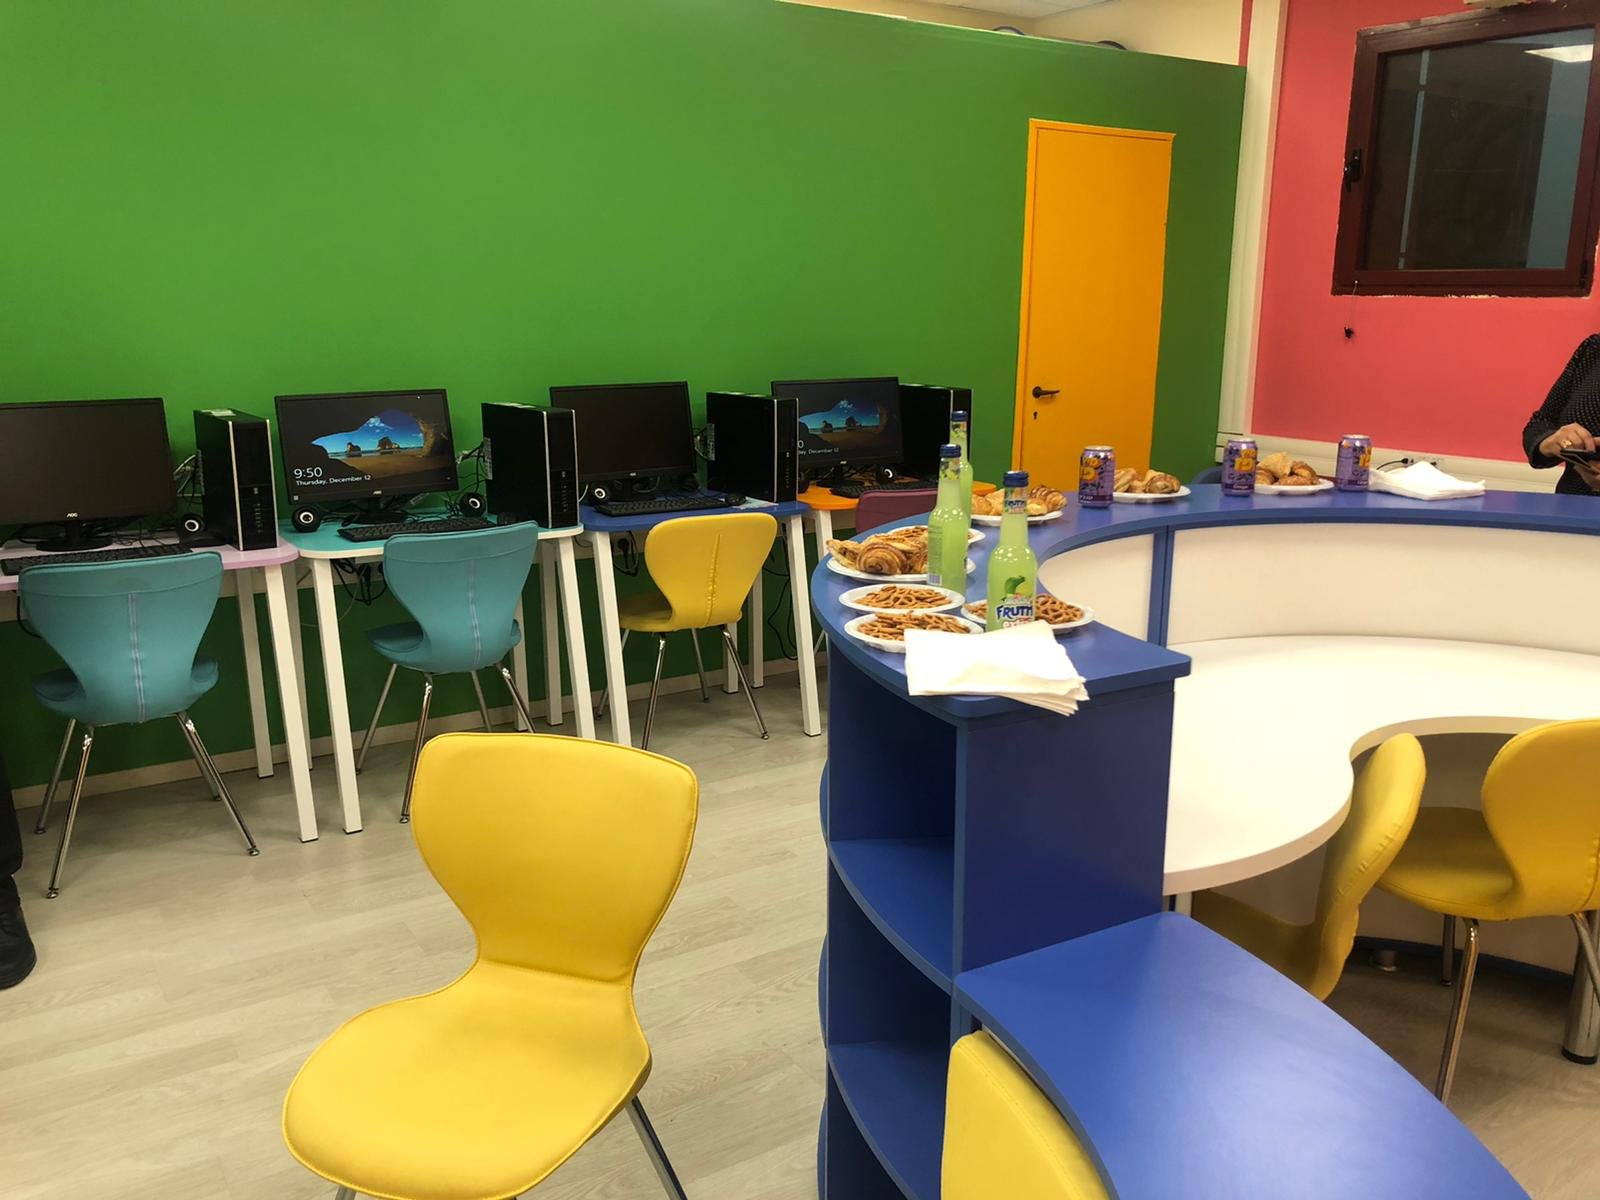  يافة الناصرة: بنك هبوعليم يتبرع بحواسيب لمدرسة الشمالي-0